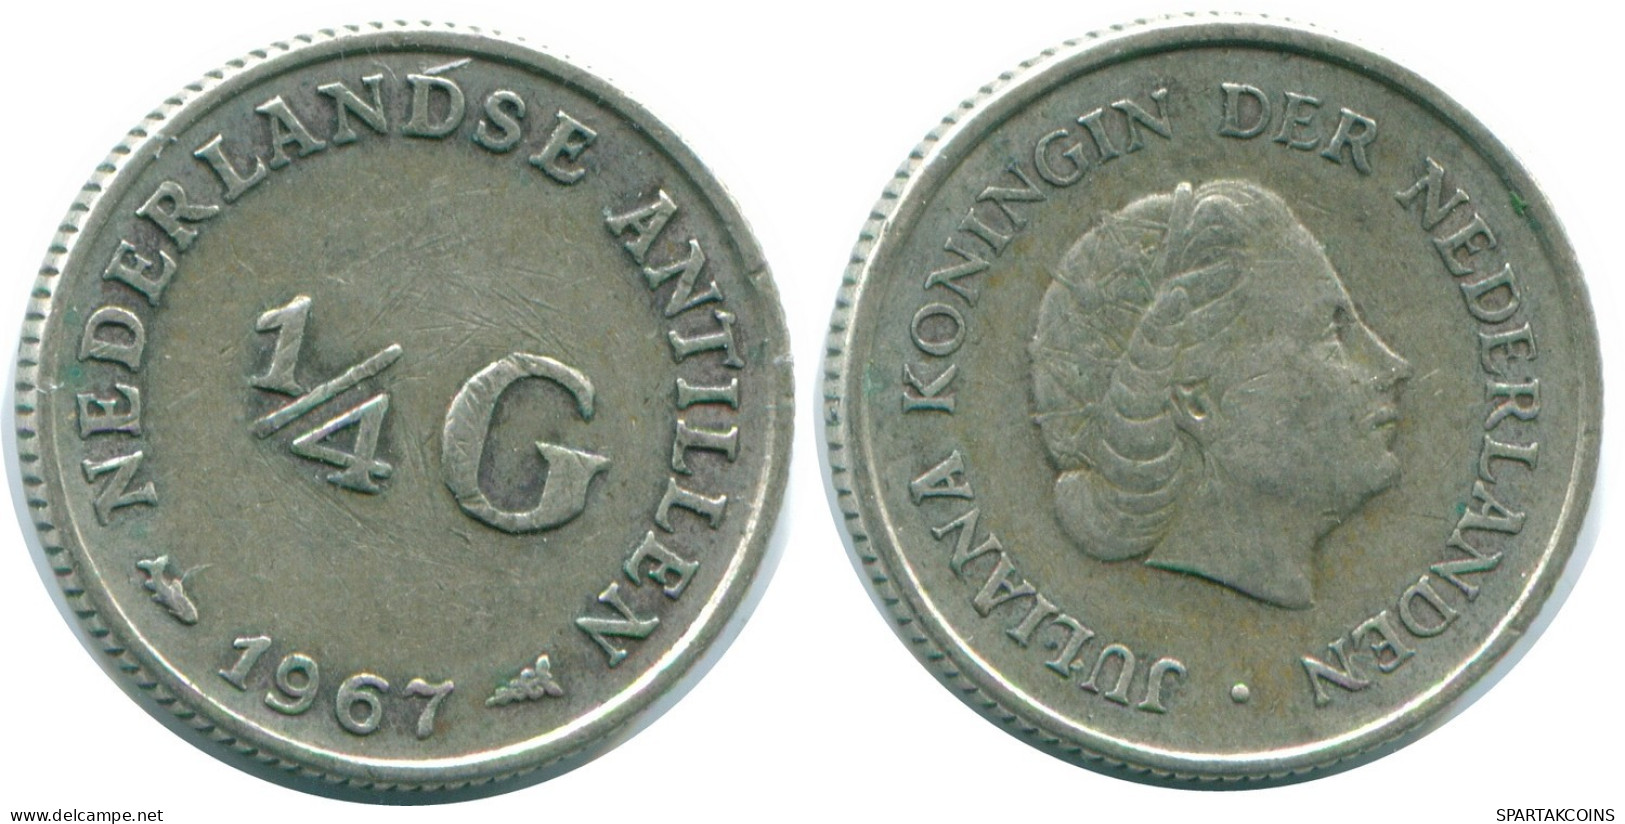 1/4 GULDEN 1967 NIEDERLÄNDISCHE ANTILLEN SILBER Koloniale Münze #NL11582.4.D.A - Antille Olandesi